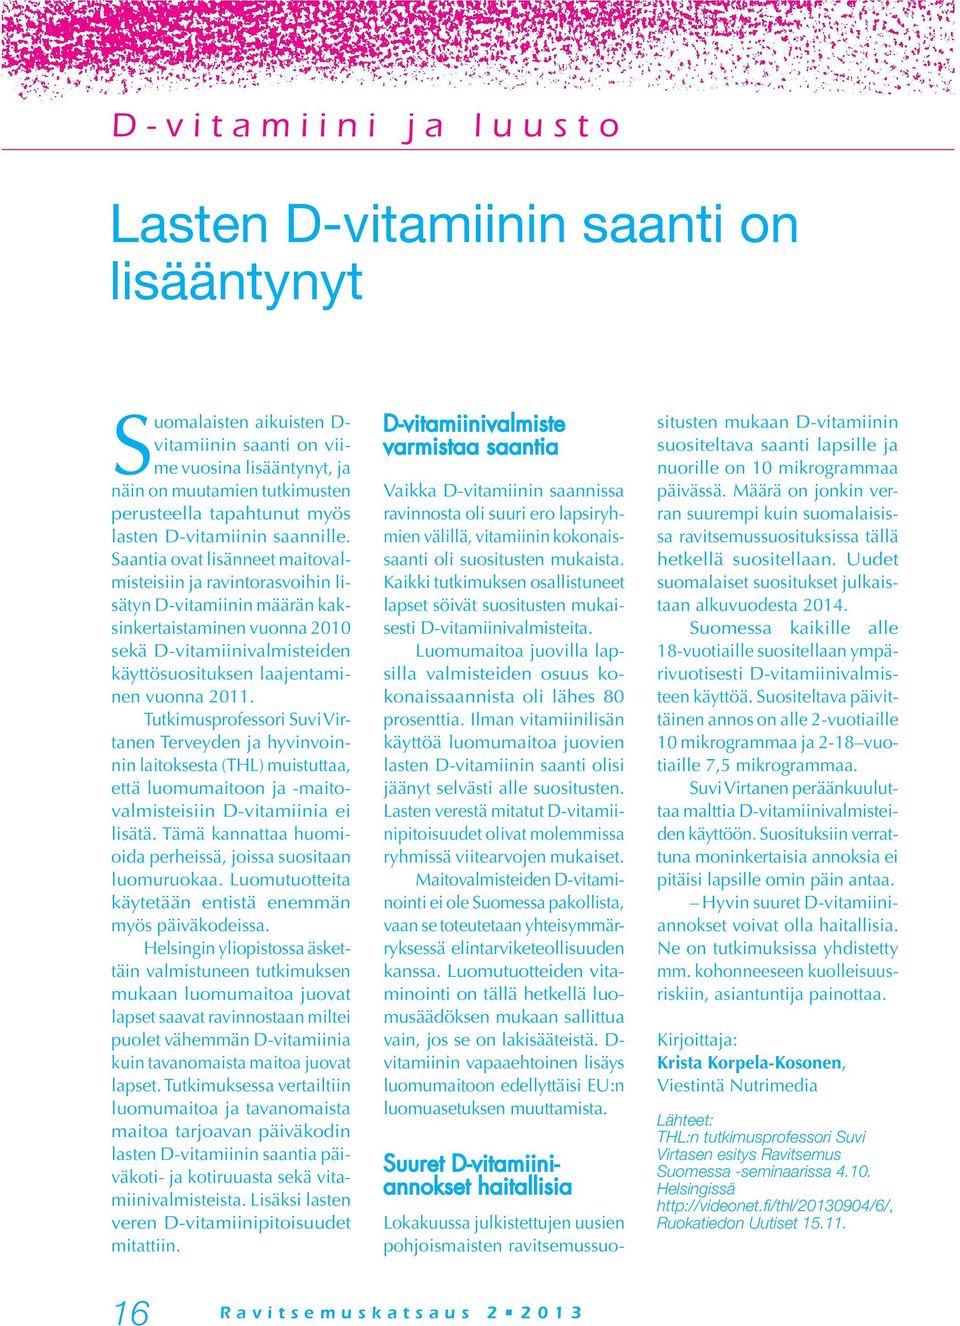 Saantia ovat lisänneet maitovalmisteisiin ja ravintorasvoihin lisätyn D-vitamiinin määrän kaksinkertaistaminen vuonna 2010 sekä D-vitamiinivalmisteiden käyttösuosituksen laajentaminen vuonna 2011.